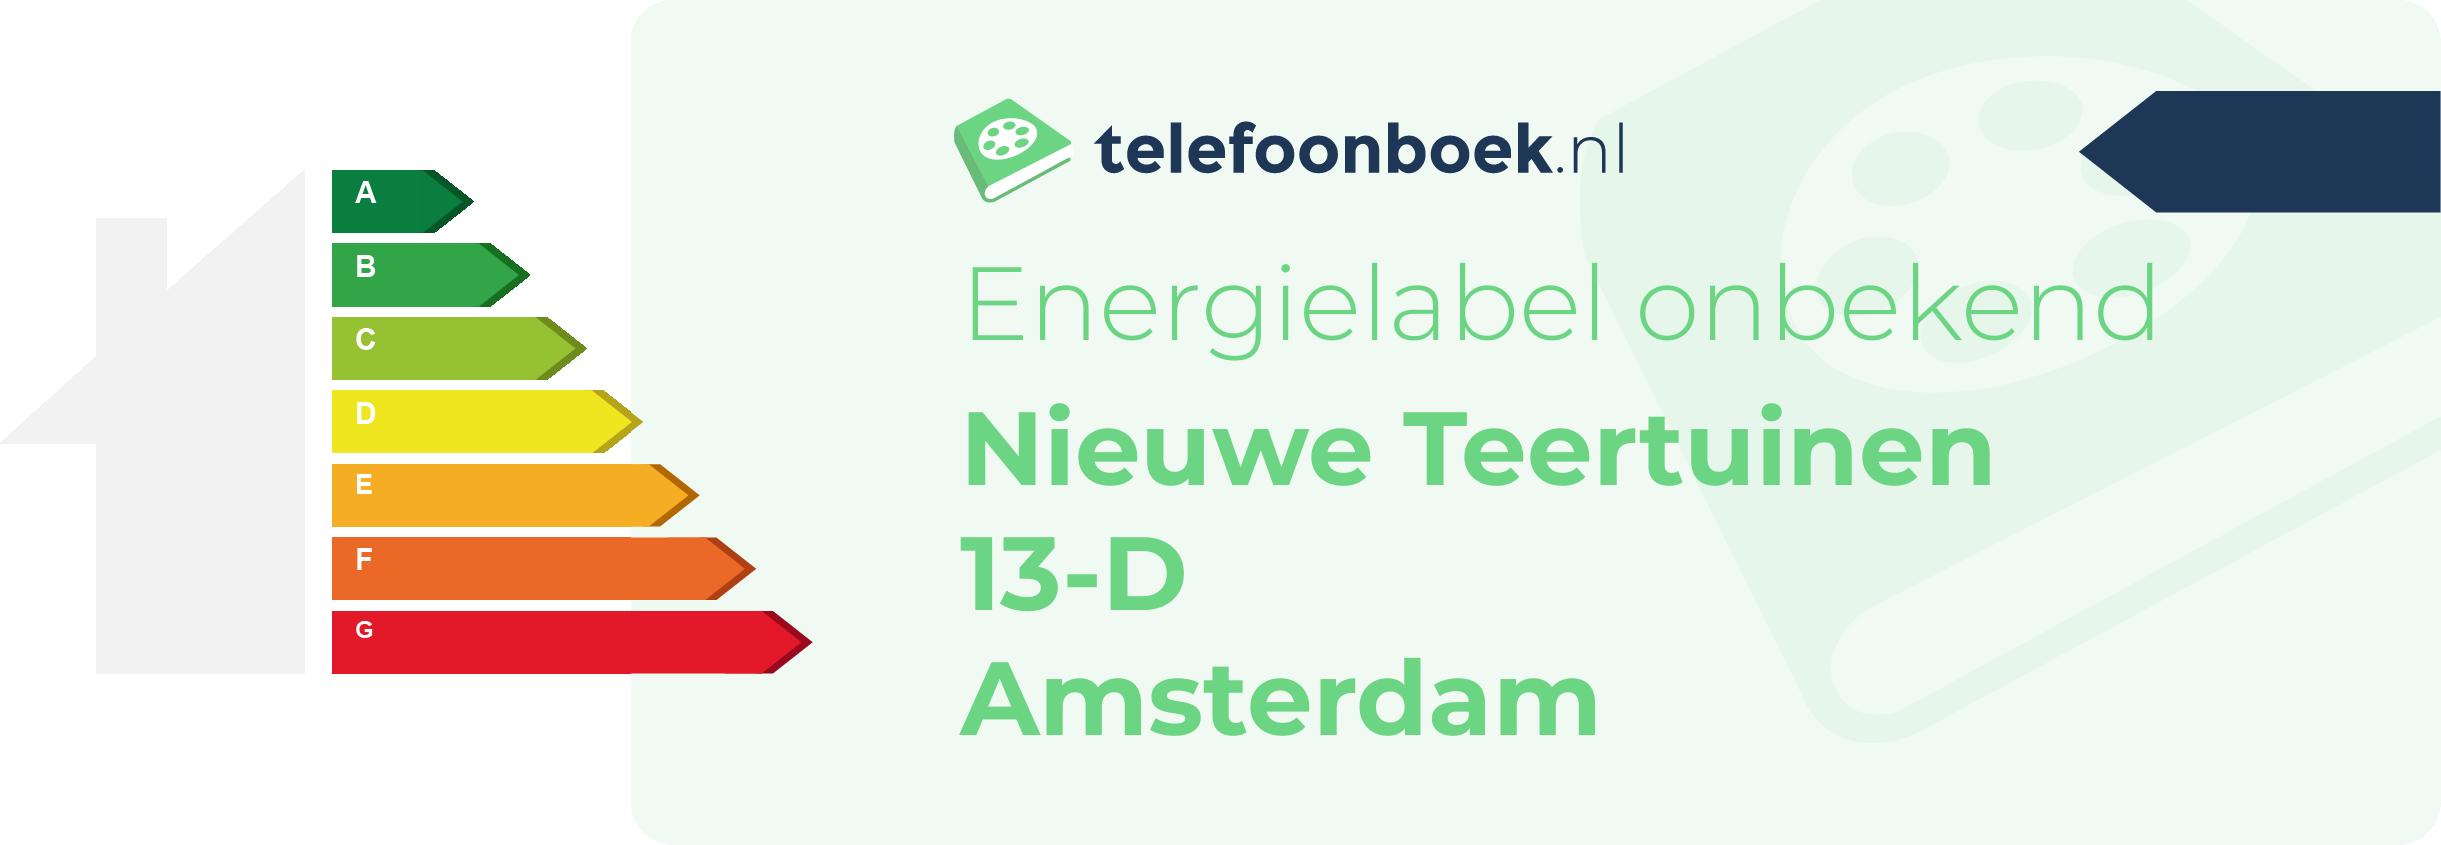 Energielabel Nieuwe Teertuinen 13-D Amsterdam